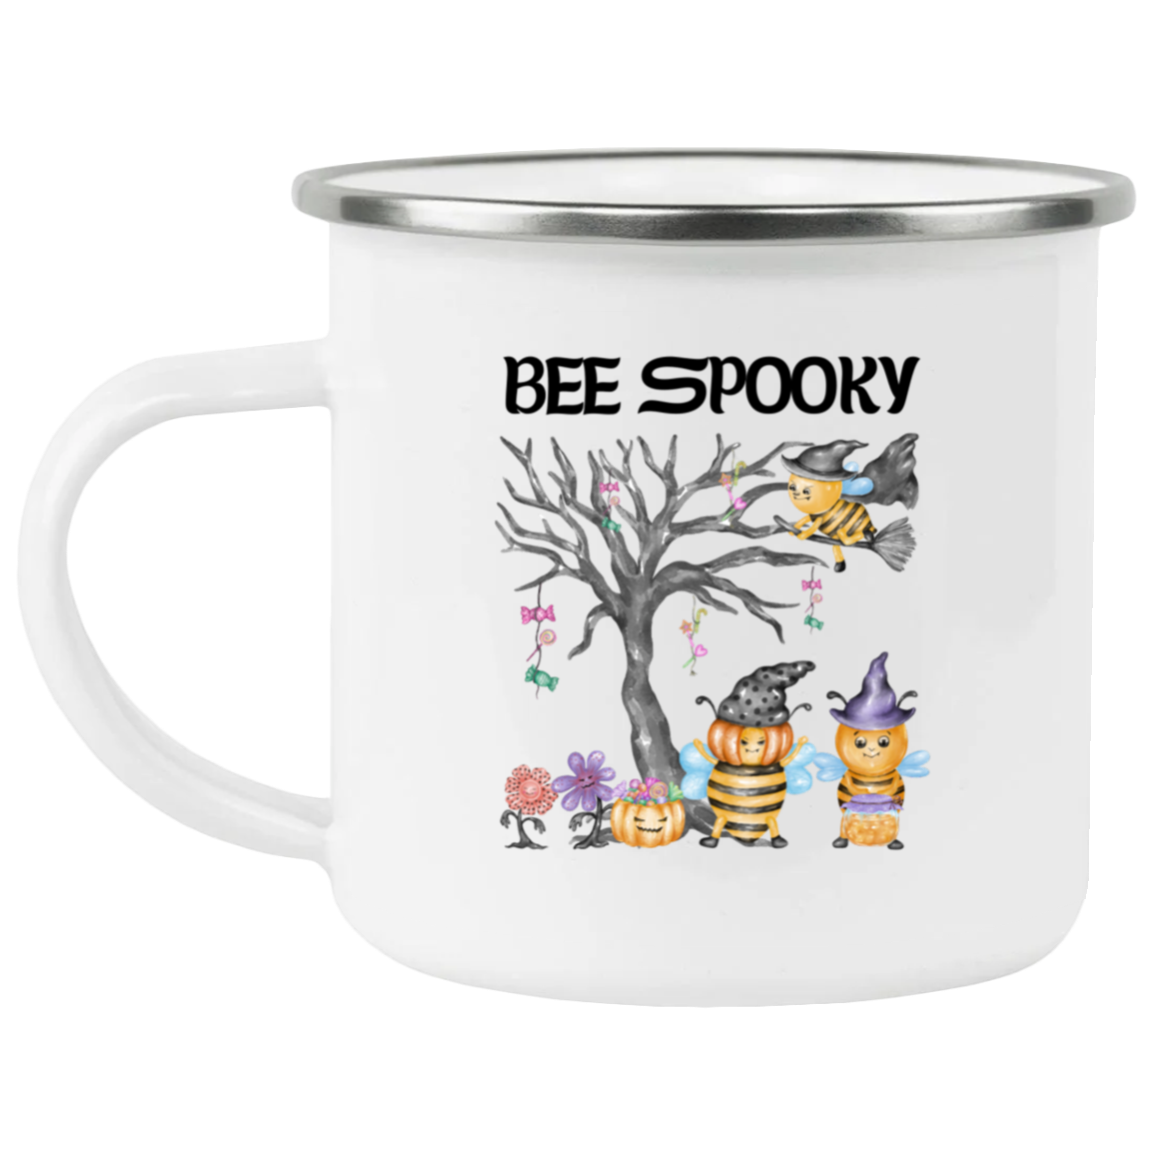 Bee Spooky- Taza de camping esmaltada